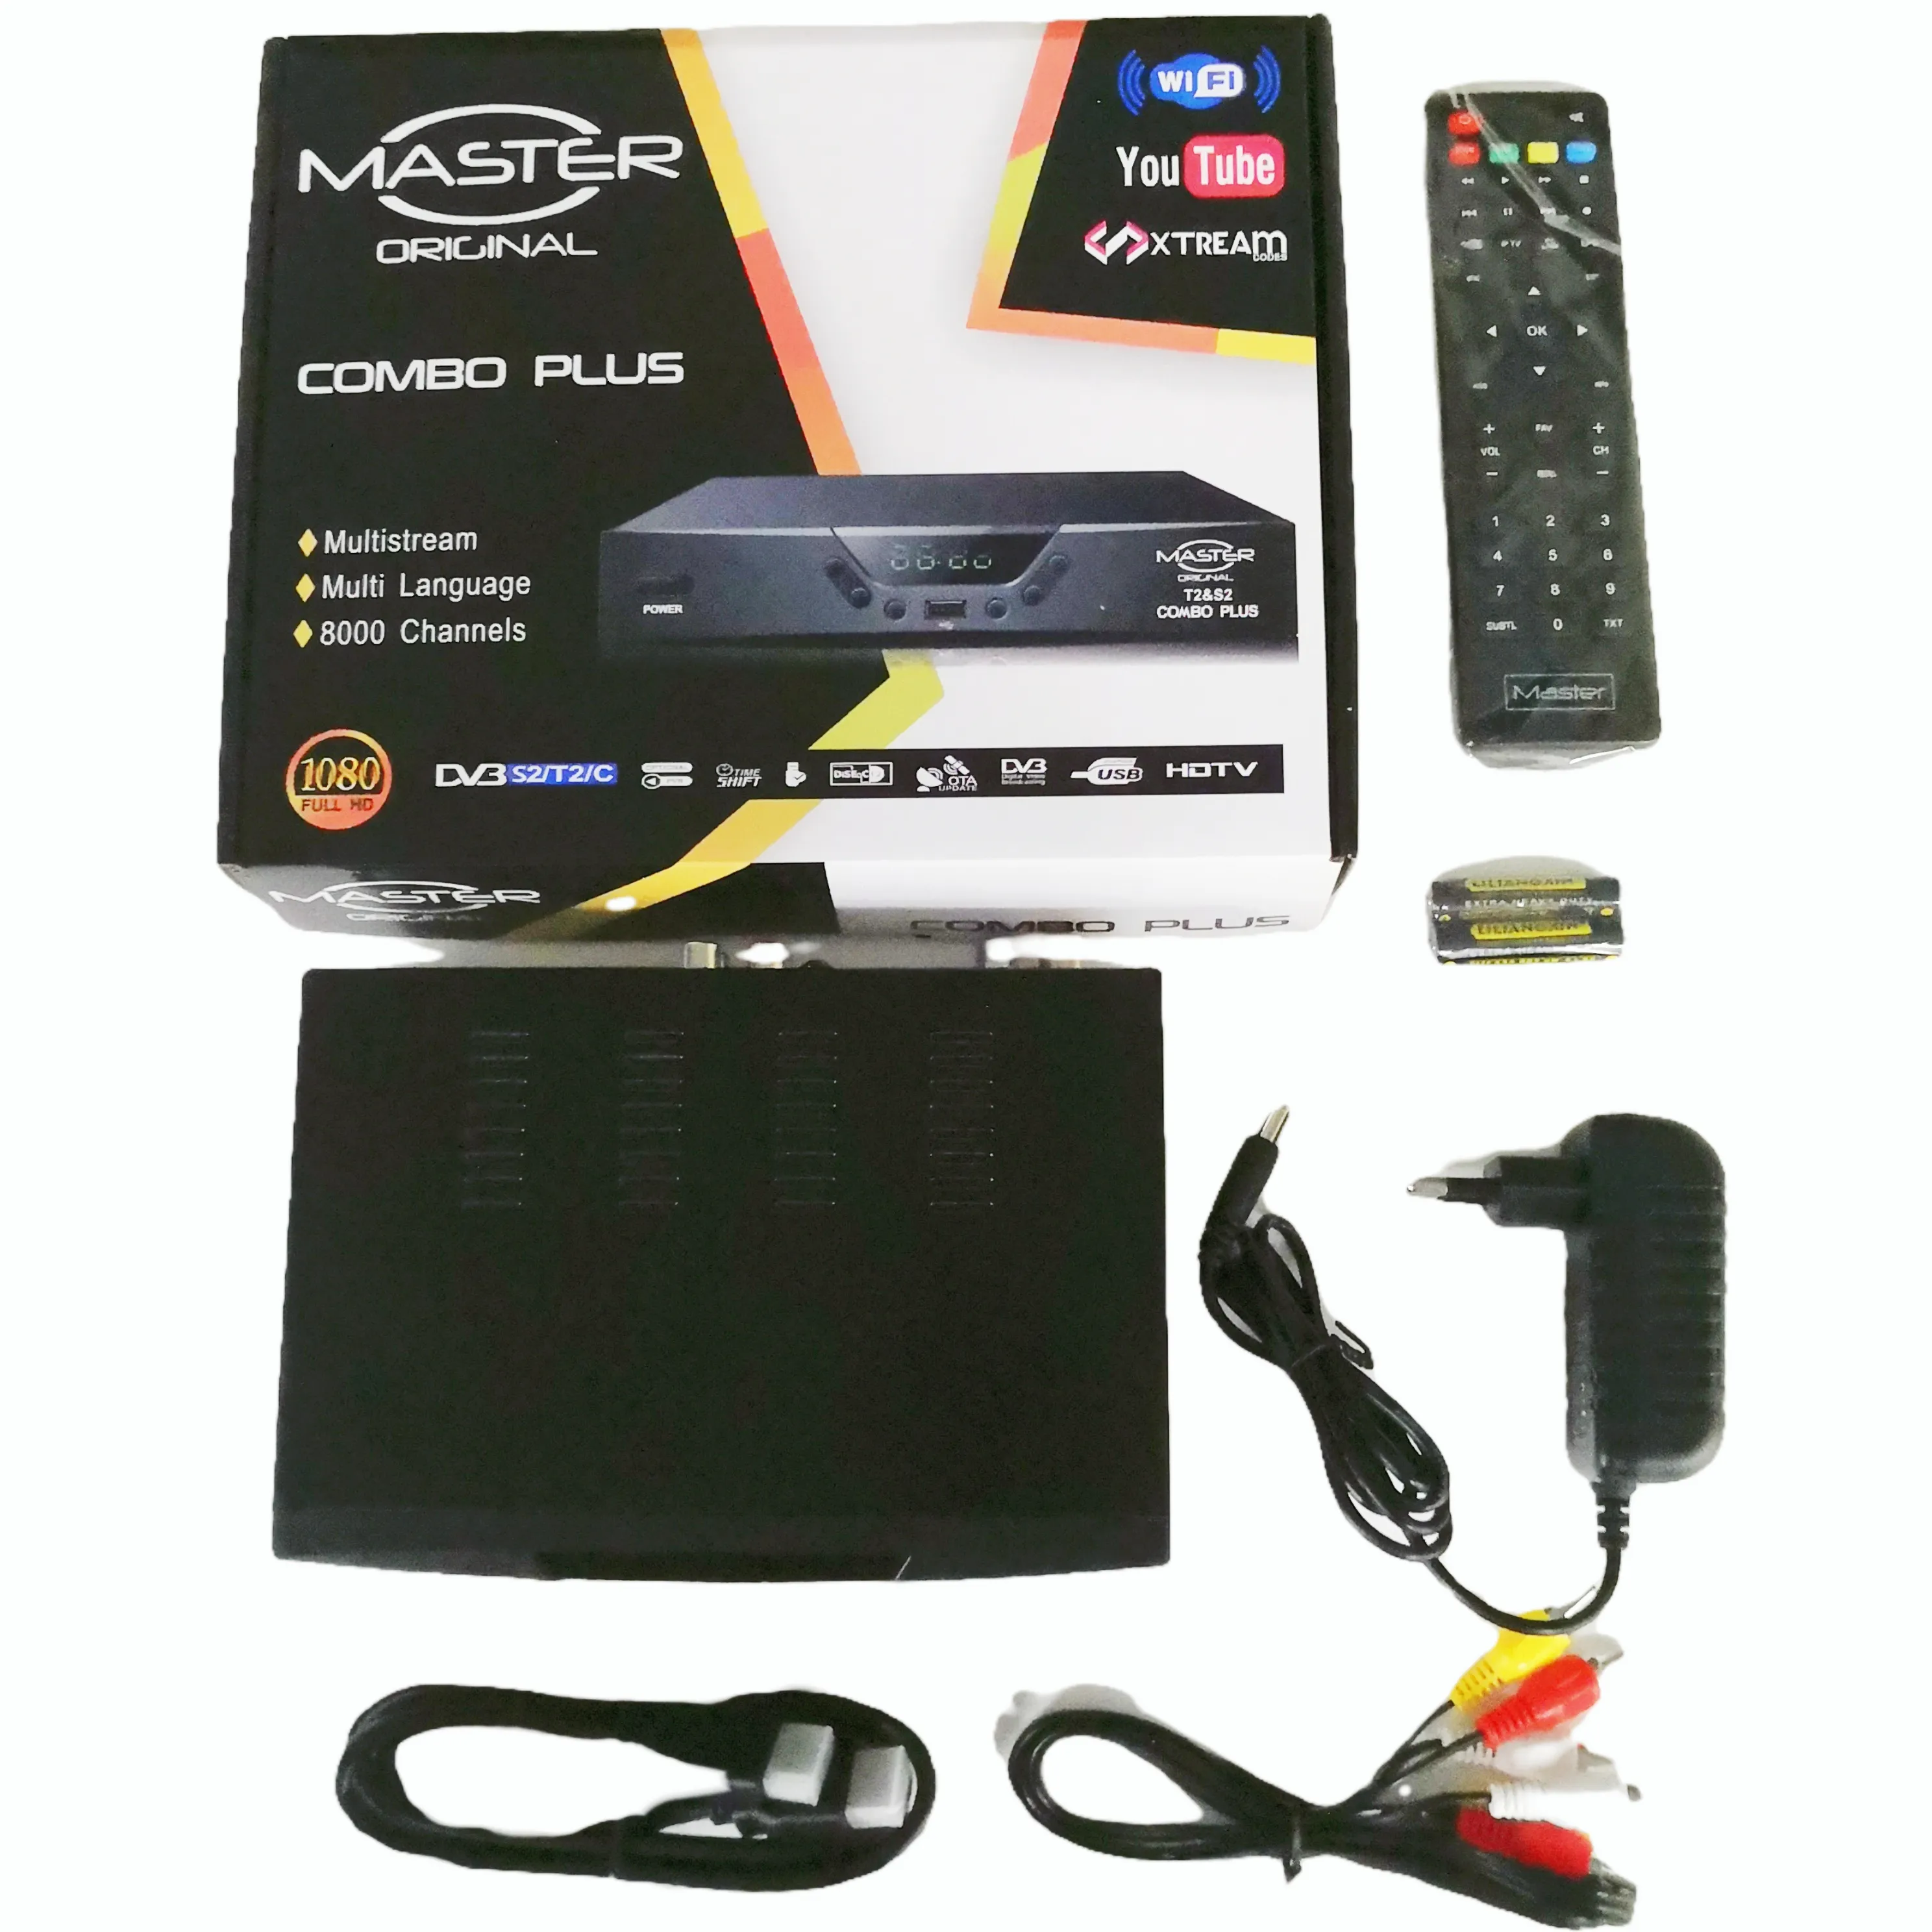 कॉम्बो DVB-T2+S2+C सैटेलाइट टीवी रिसीवर डिकोडर H.264 HD 1080p FTA सपोर्ट Cccam Mgcam न्यूकैम सेट टॉप बॉक्स